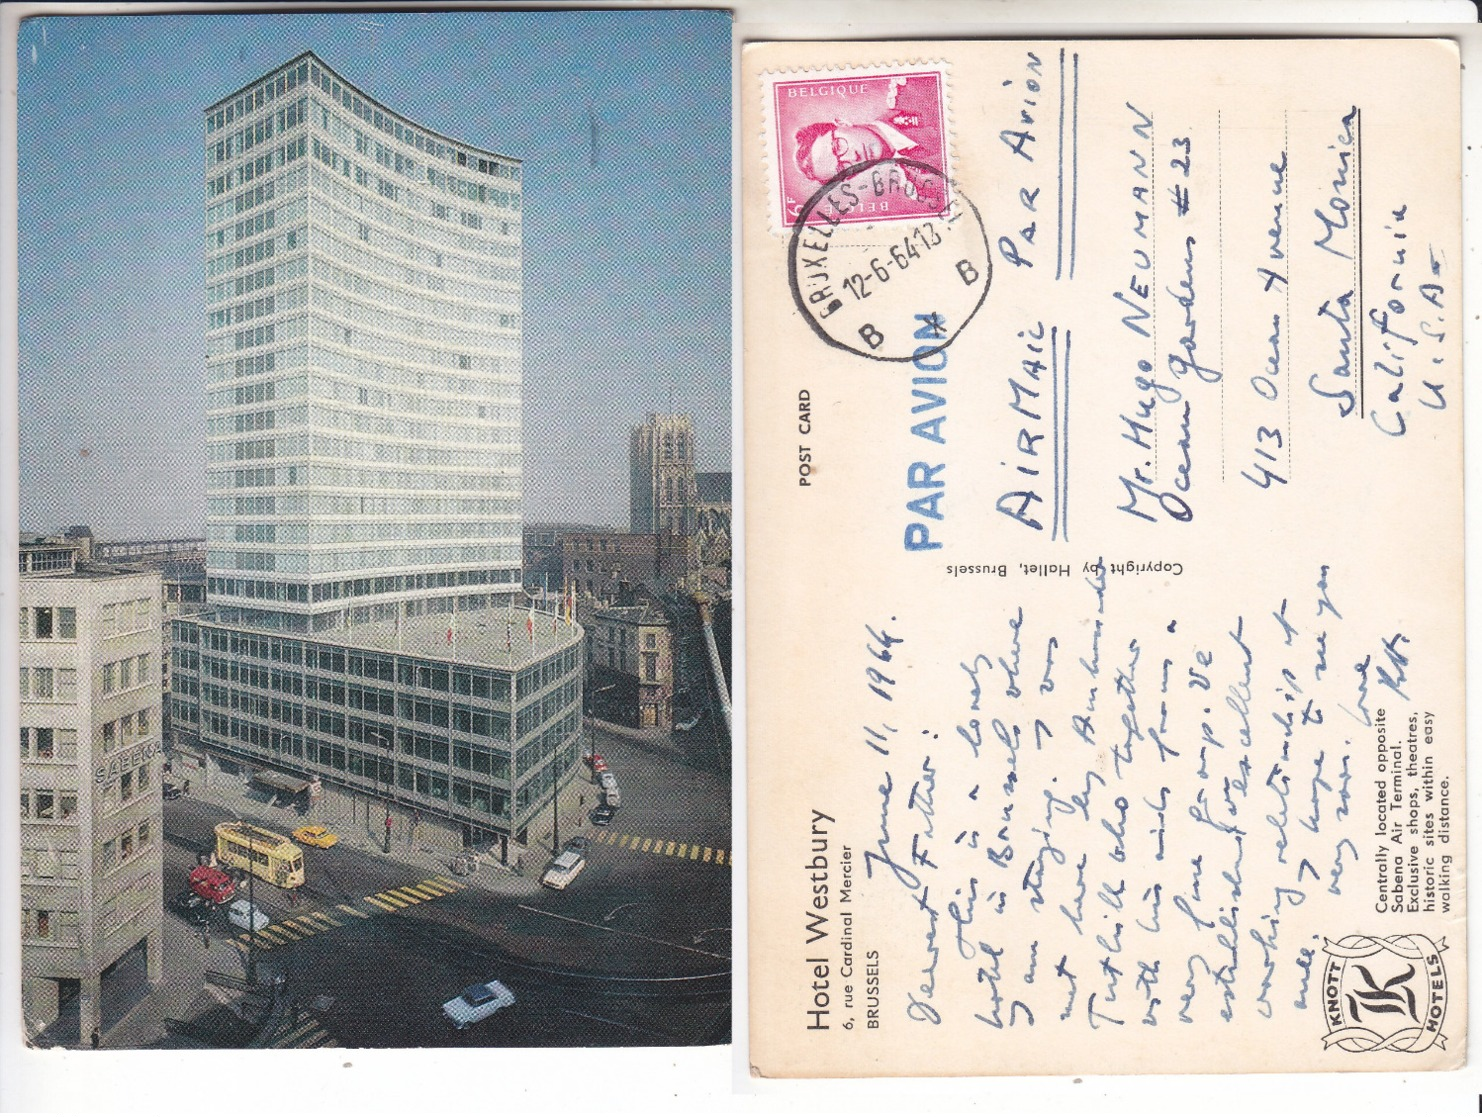 SP- BELGIQUE - BRUSSELS - BRUXELLES - HOTEL WESTBURY- Tram Jaune - Timbre - Cachet - 1964 - Cafés, Hôtels, Restaurants